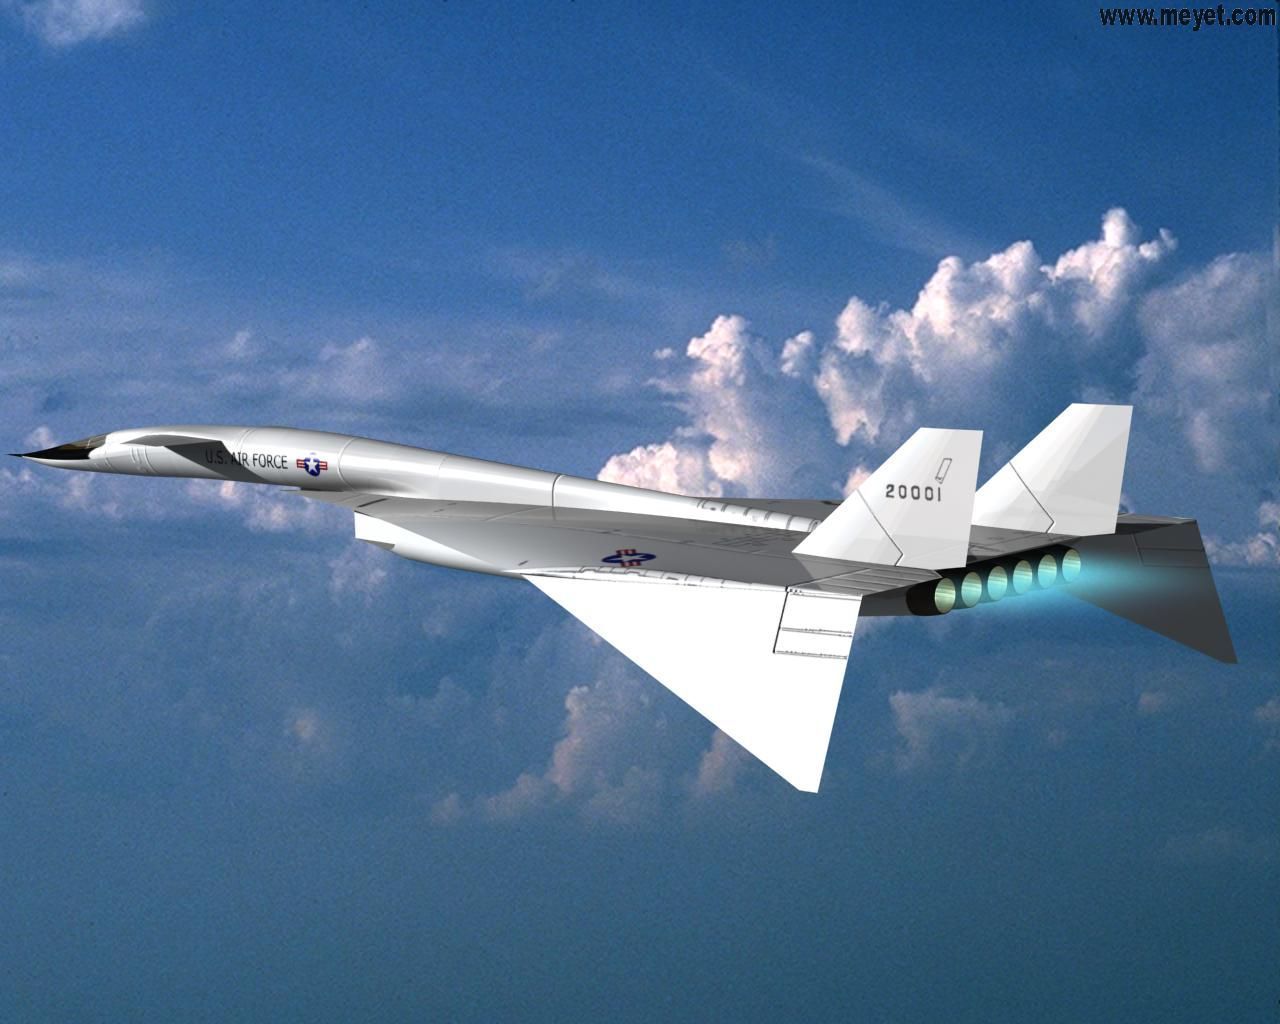 飞机起飞速度思路比较一根筋,就是飞机飞的快,雷达看得远,导弹速度快